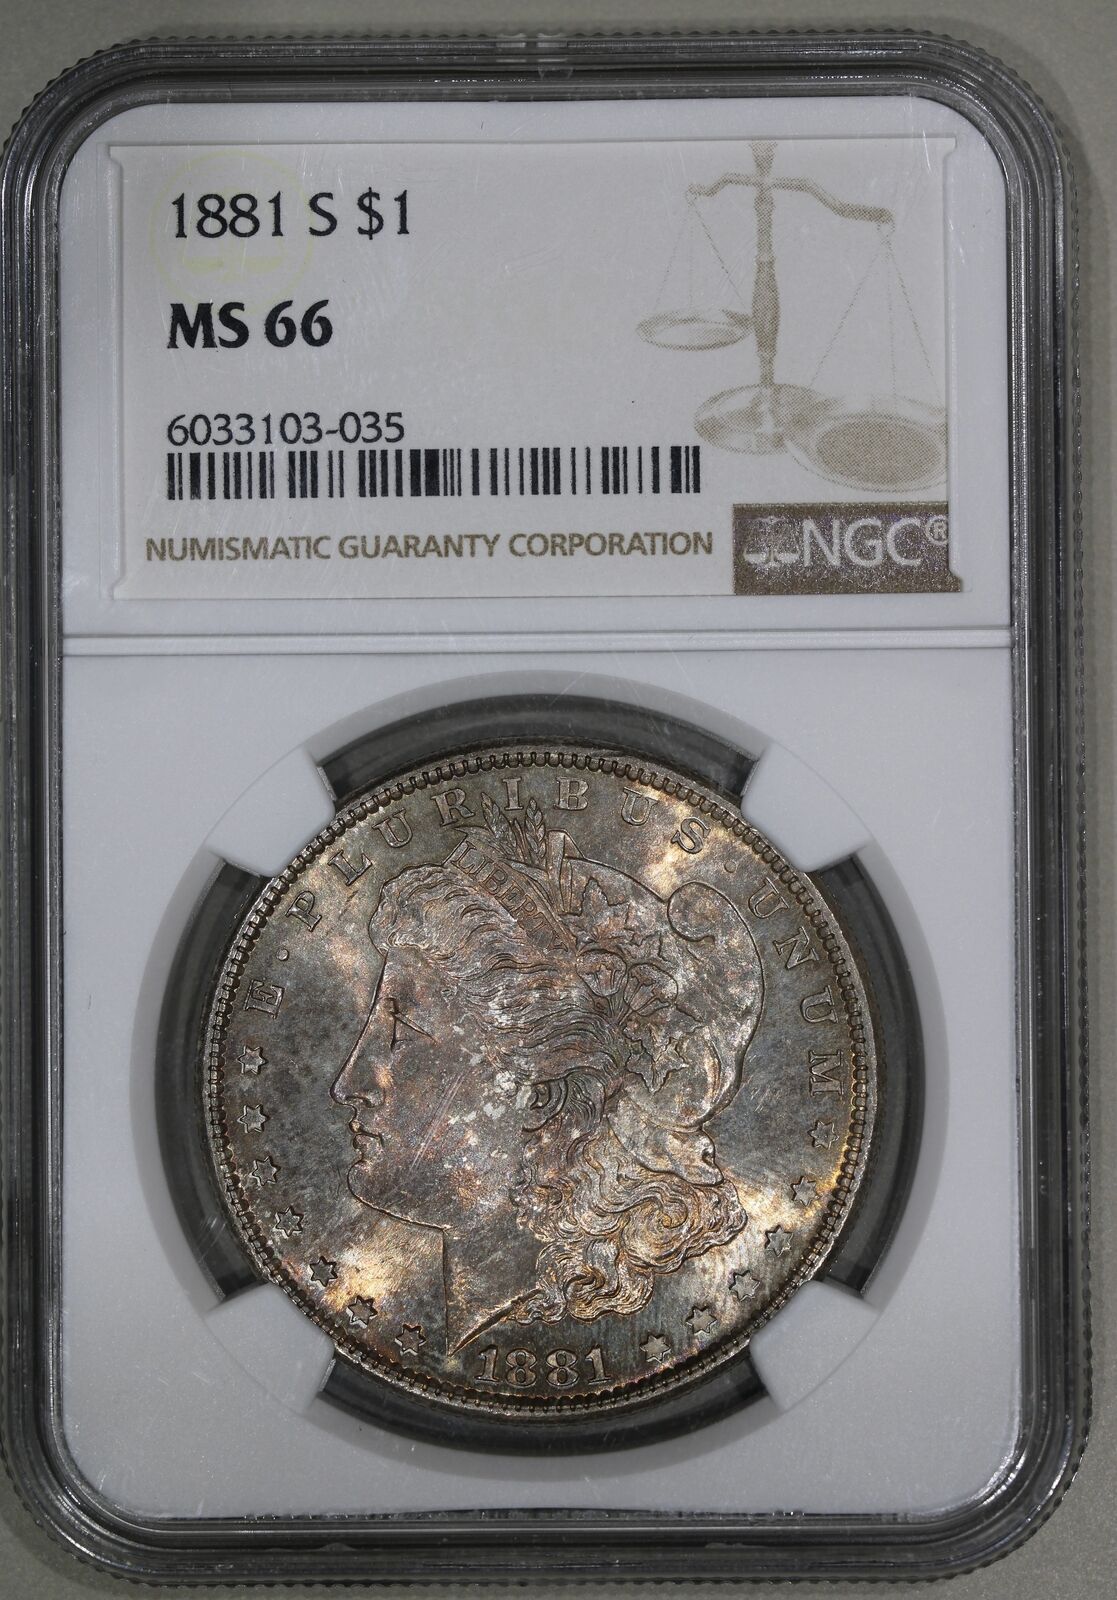 1881-S (MS66) Morgan Silver Dollar $1 NGC Graded Coin - NICE TONING